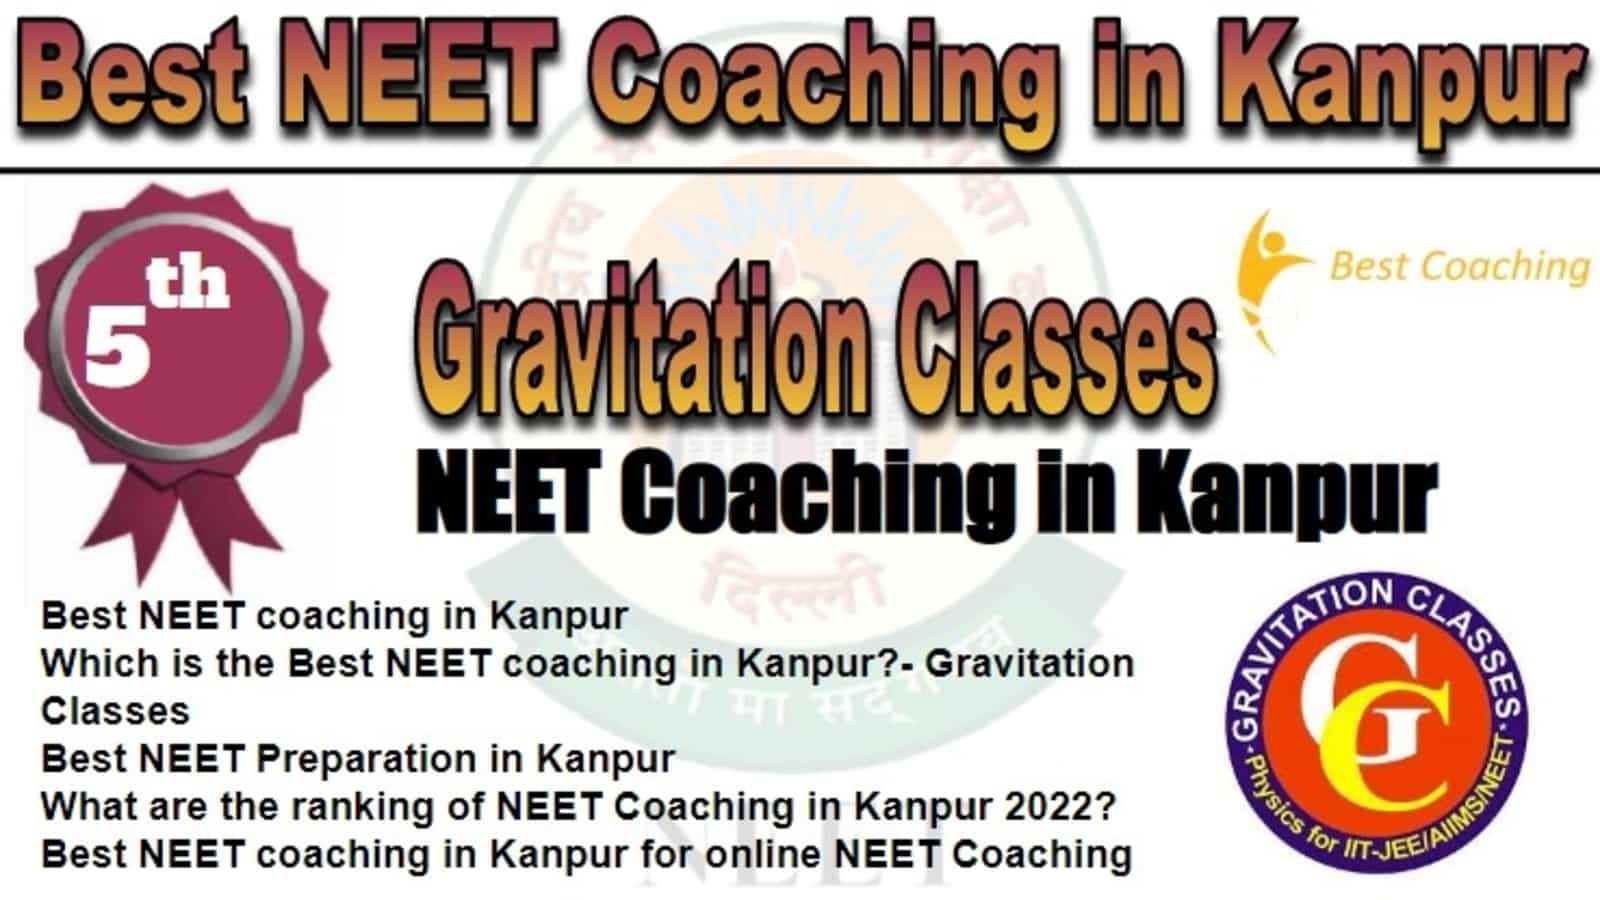 Rank 5 Best NEET Coaching In Kanpur